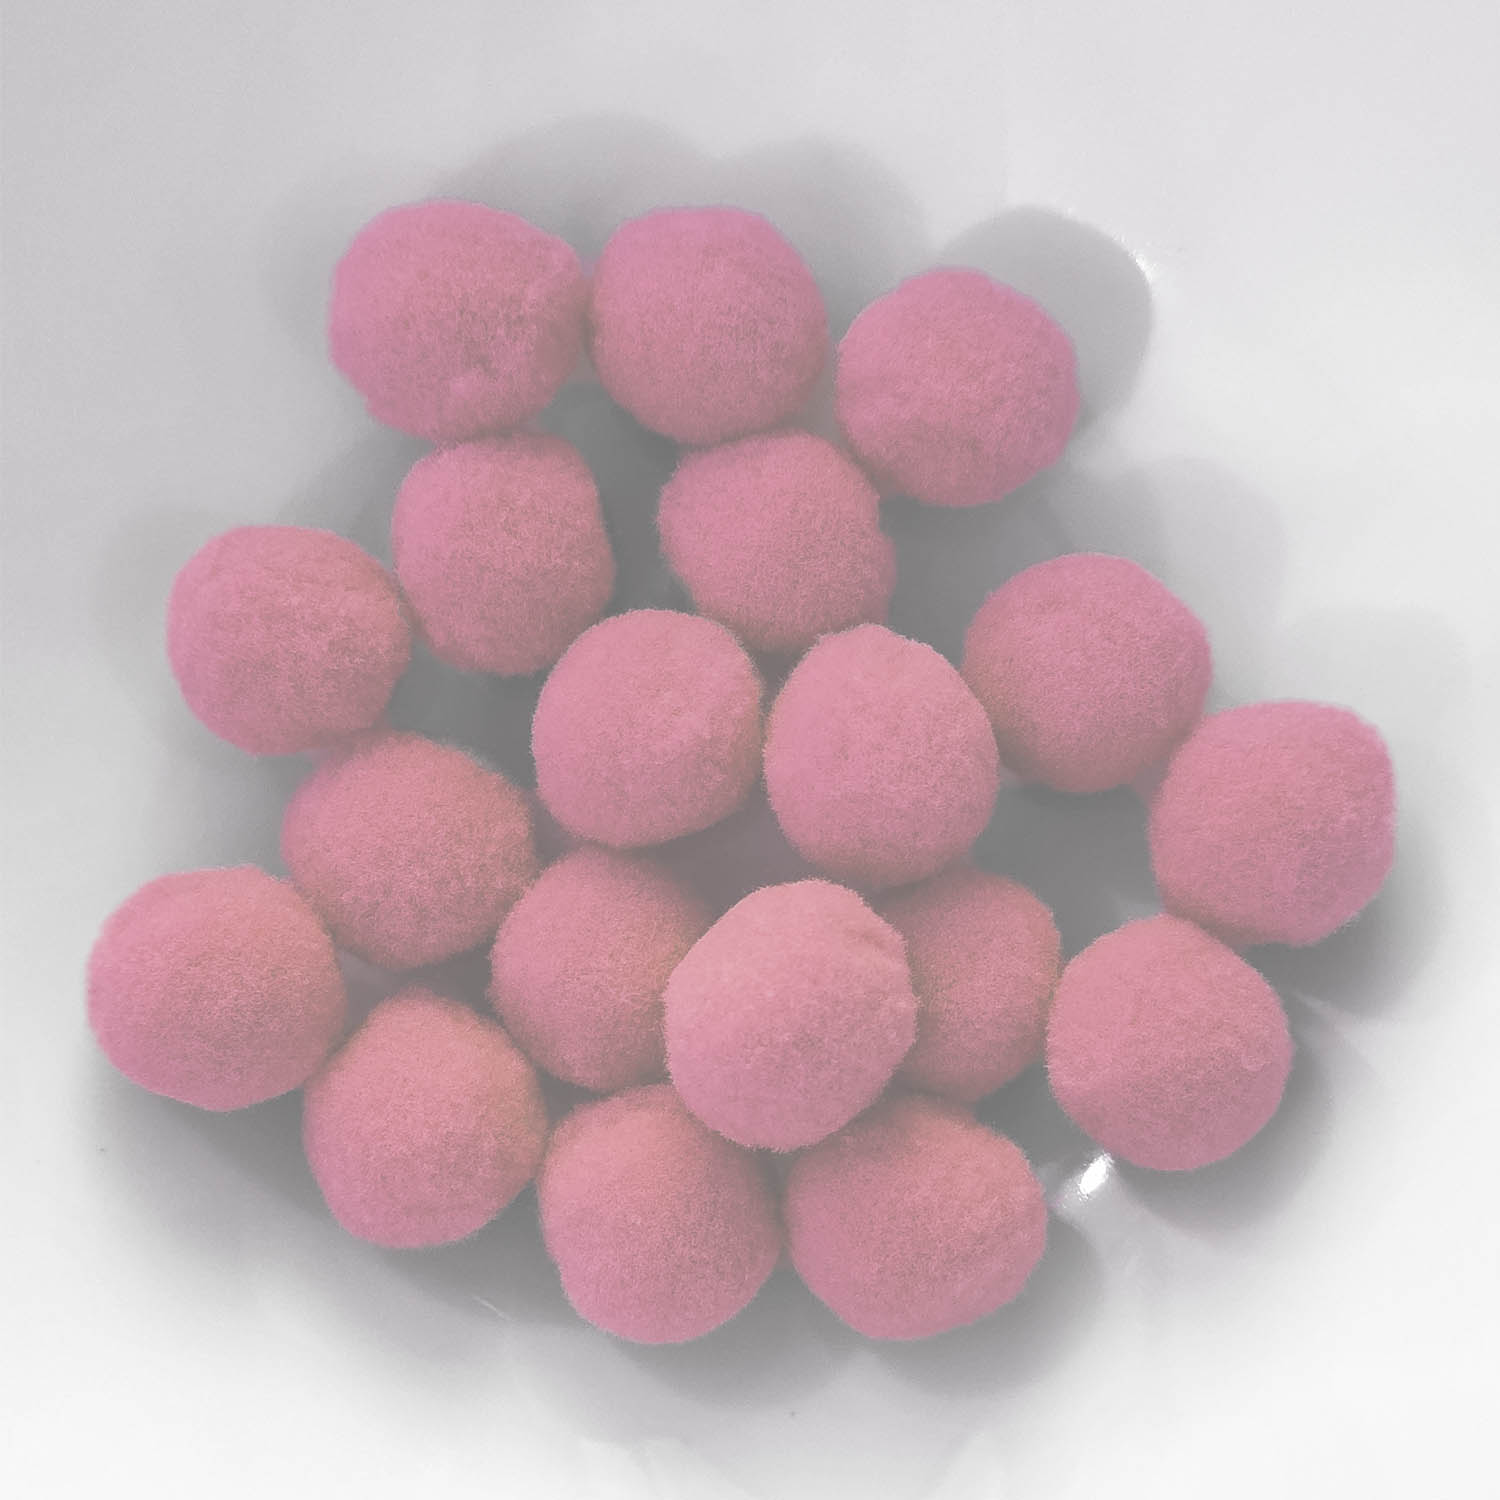 PomPon / Bälle aus Baumwolle - 10 mm / 50er Set - Pink hell